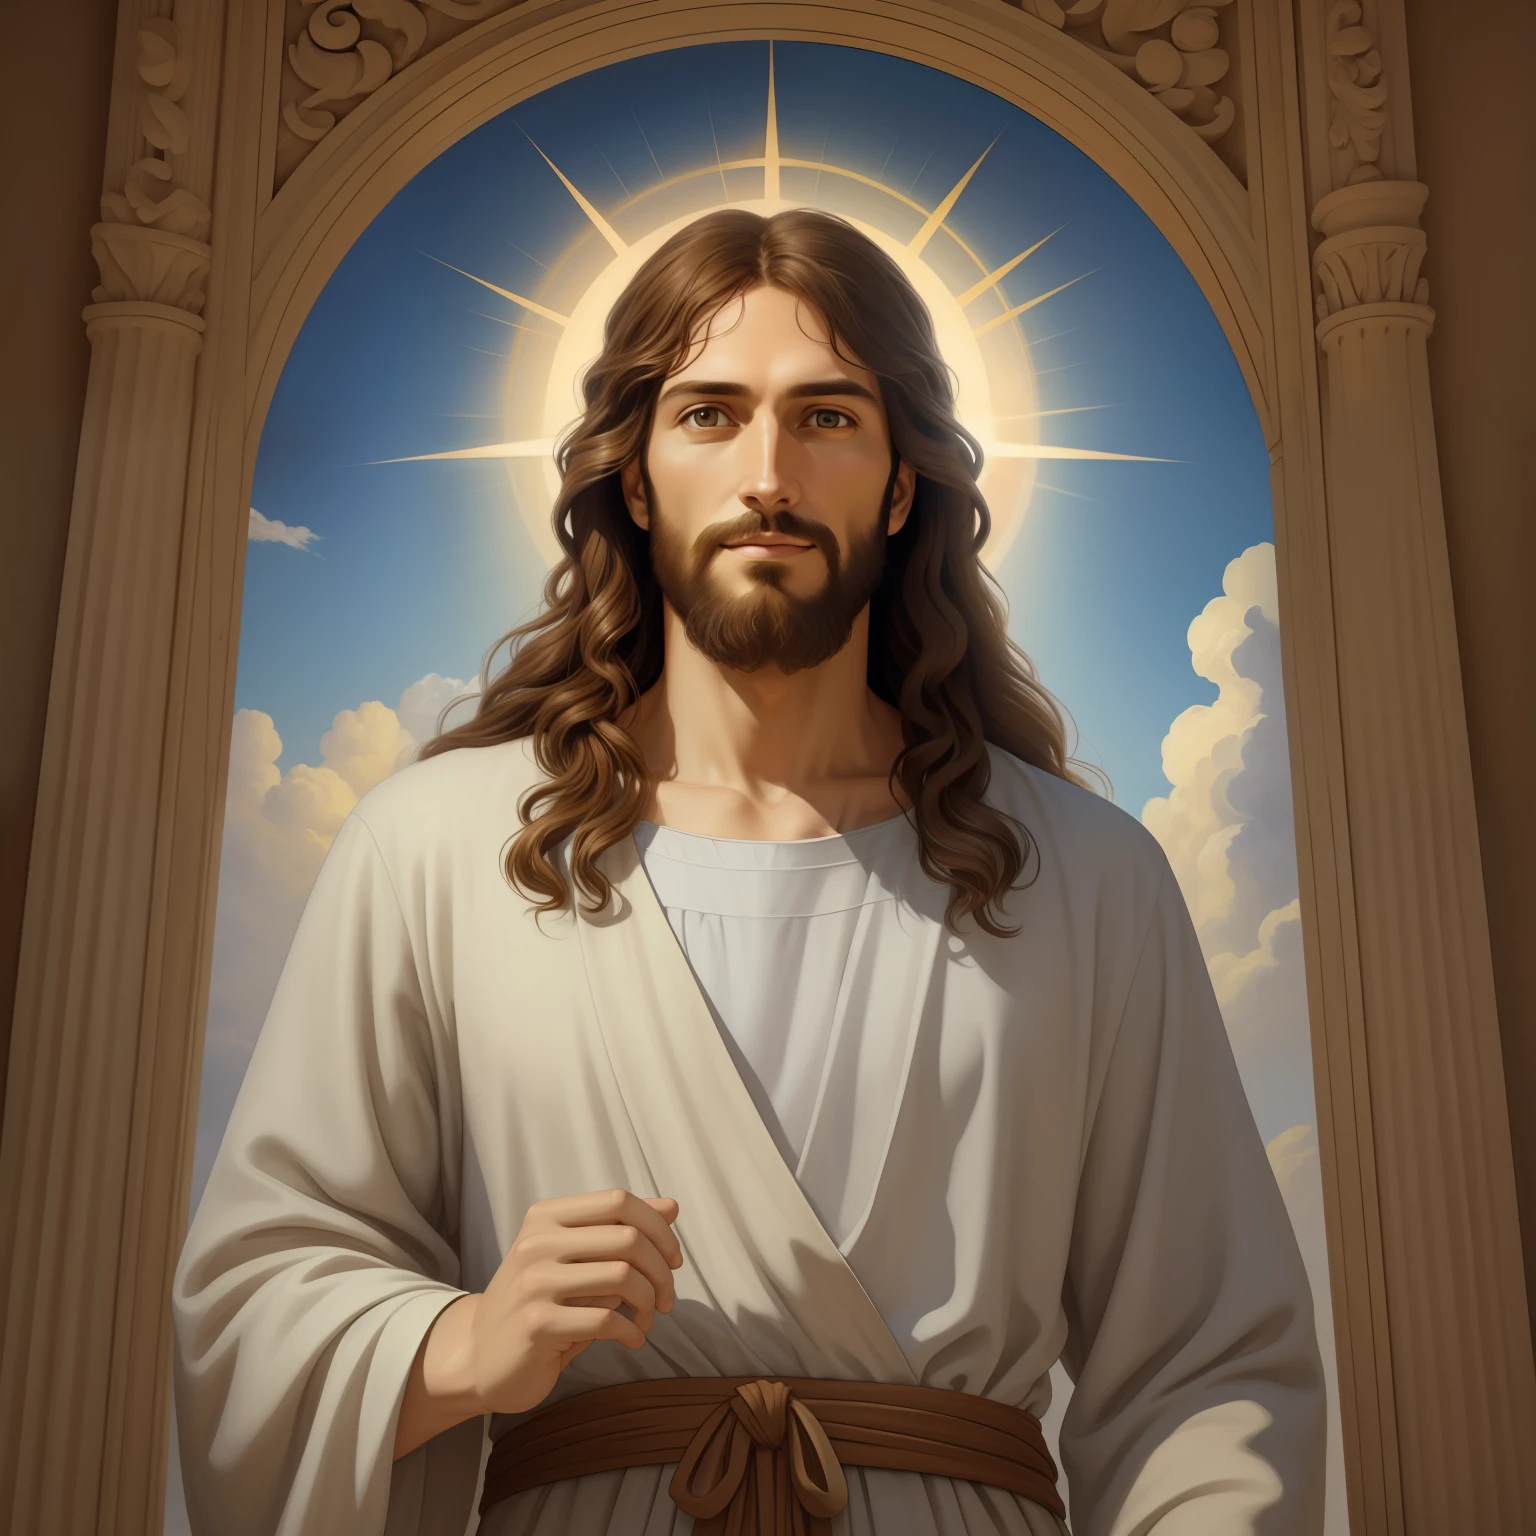 A beautiful ultra-thin 現実的 portrait of Jesus, 預言者, 34歳の男性ヘブライブルネット, 短い茶色の髪, 長い茶色のひげ, と, 胸元が閉じた長いリネンのチュニックを着ている, 正面から, 全身, 聖書の, 現実的,ディエゴ・ベラスケス,ピーテル・パウル・ルーベンス,レンブラント,アレックス・ロス,8k, コンセプトアート, Photo現実的, 現実的,  図, 油絵, シュルレアリスム, Hyper現実的, デジタルアート, スタイル, watercolor 
a 3D 現実的 of イエス と a halo in the sky, イエス christ, 天国で微笑んでいる, portrait of イエス christ, イエス face, 33 若き全能の神, 天の神の肖像画, グレッグ・オルセン, gigachad イエス, イエス of nazareth, イエス, 神の顔, 神様は私を見て, 彼はあなたを温かく迎えています, 彼は幸せだ, アバター画像